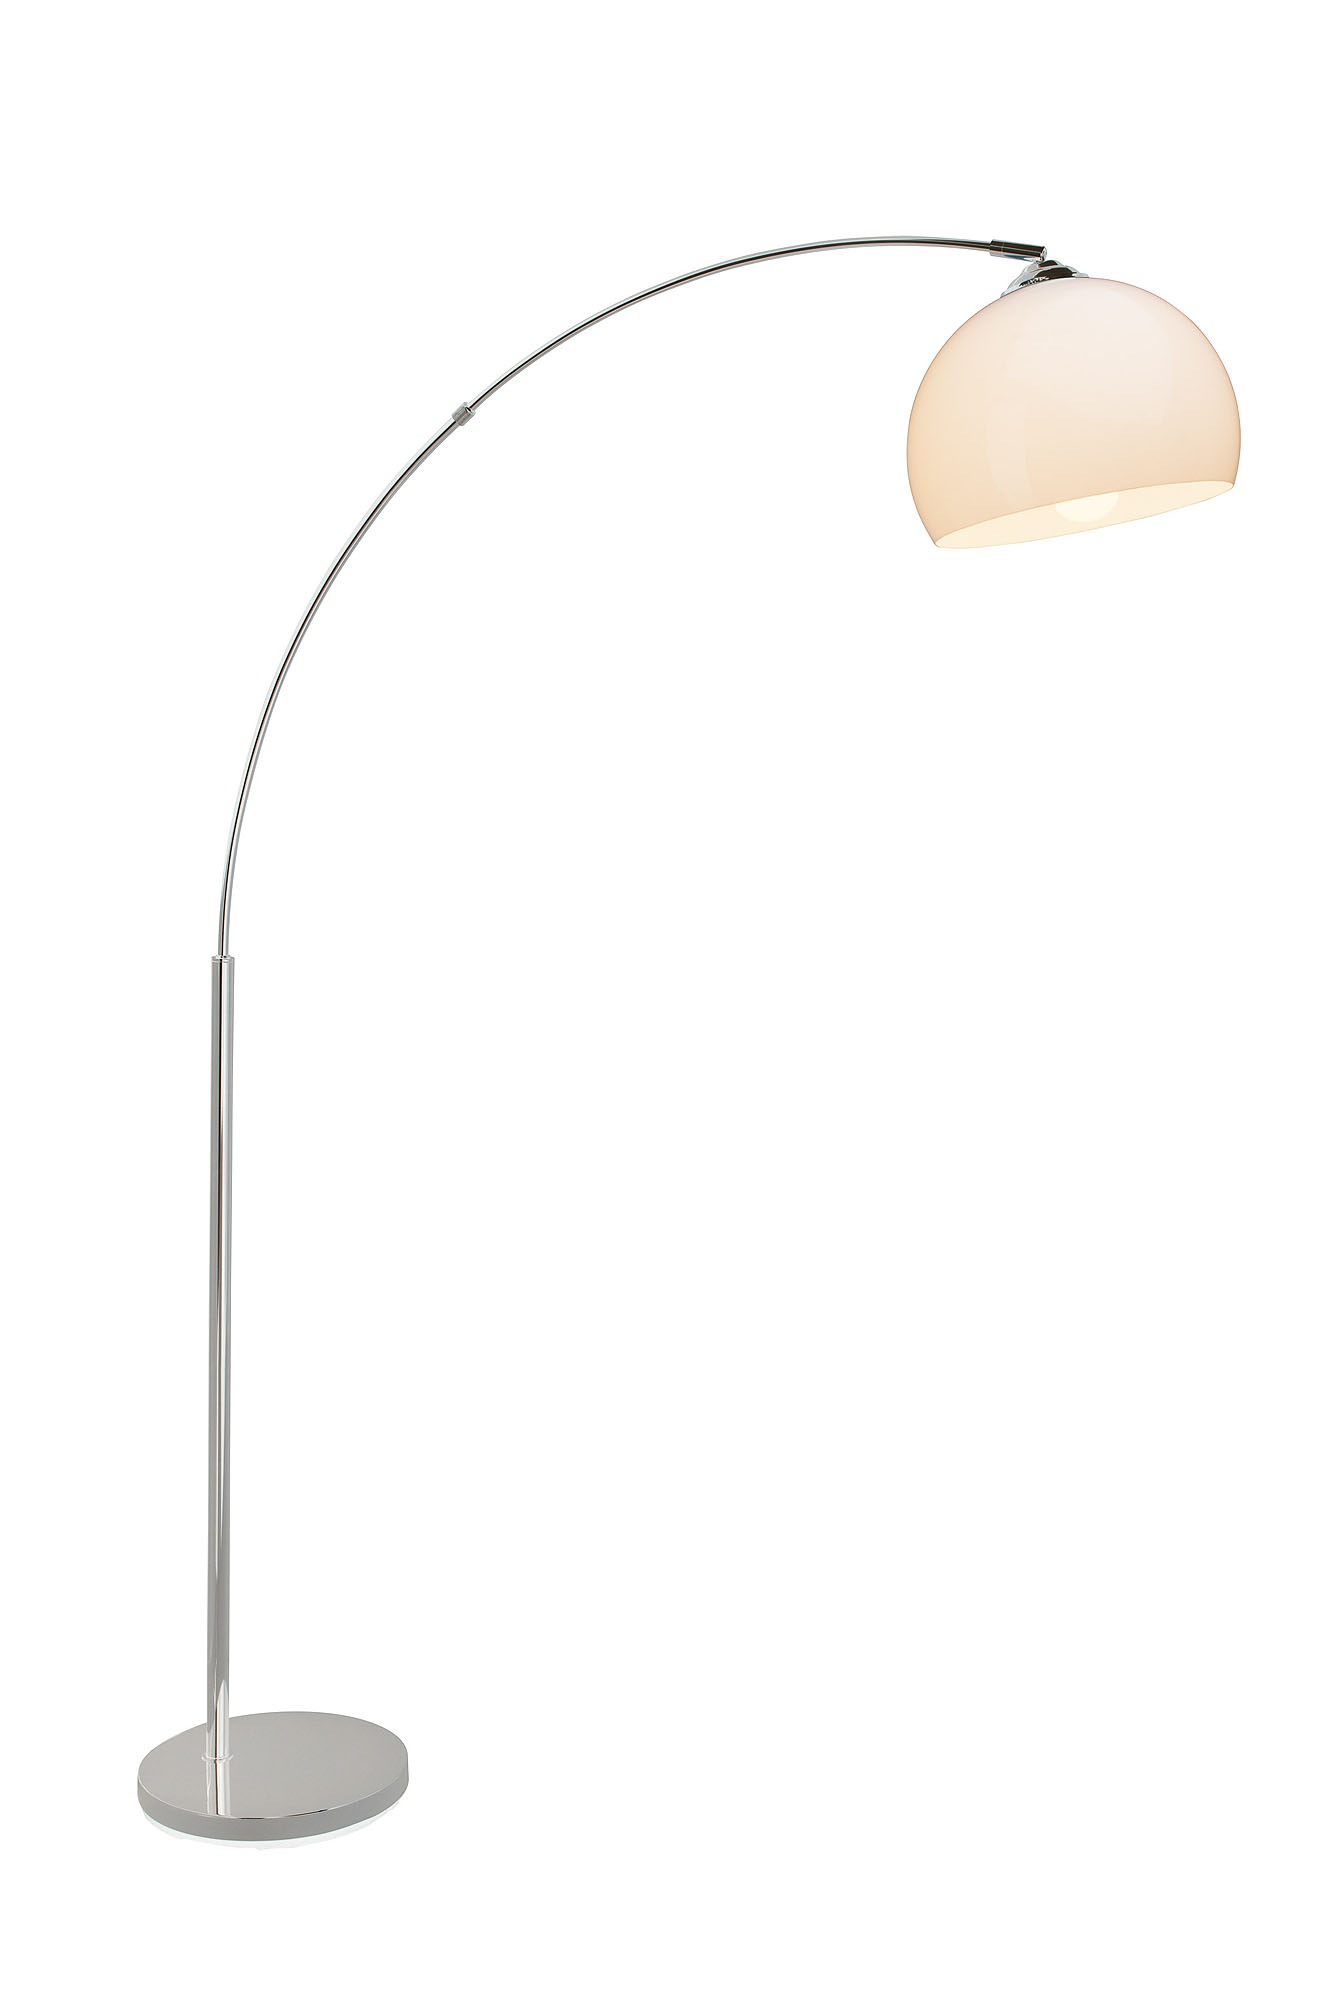 Brilliant Bogenlampe »Vessa«, 1 flammig-flammig, 166 cm Höhe, 122 cm  Ausladung, E27, Metall/Kunststoff, chrom/weiß online bei OTTO